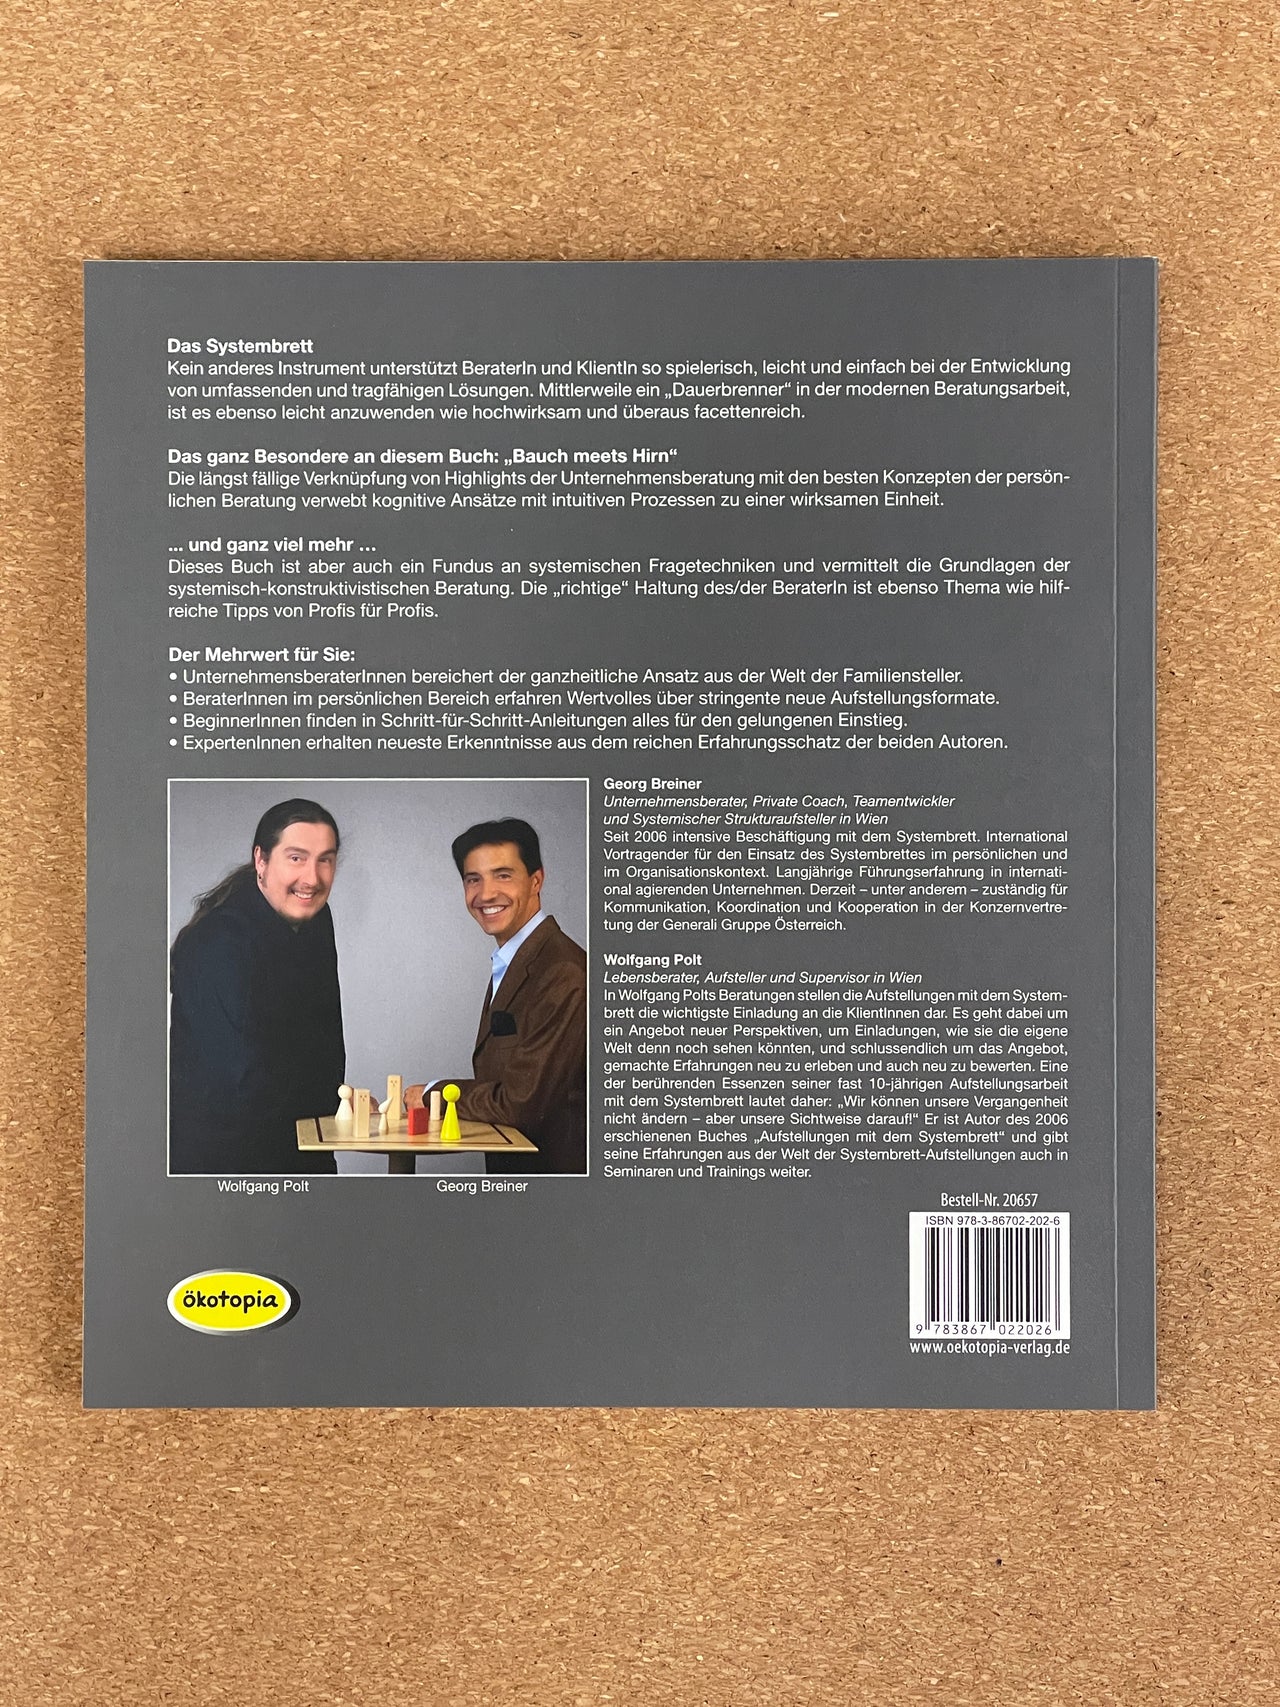 Lösungen mit dem Systembrett - Ein umfassendes Handbuch für Aufstellungen mit dem Systembrett